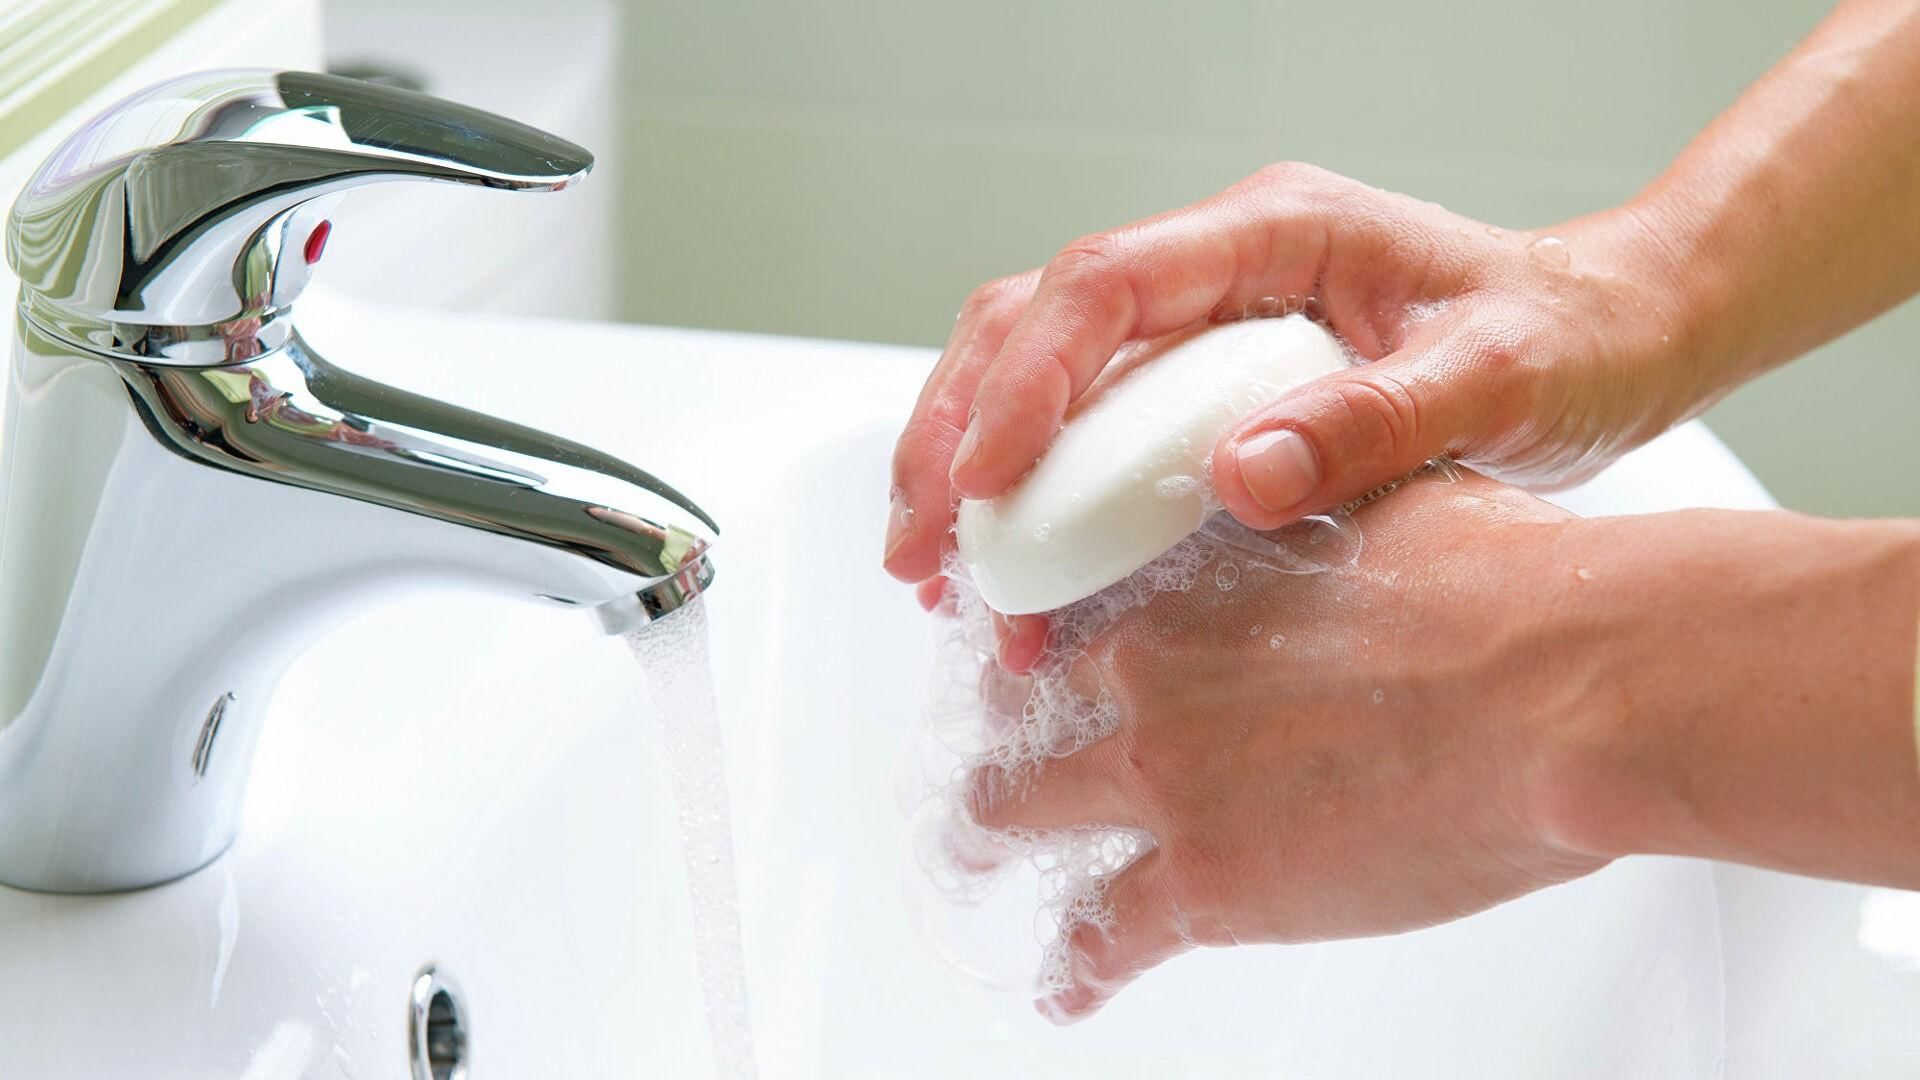 Чистые руки